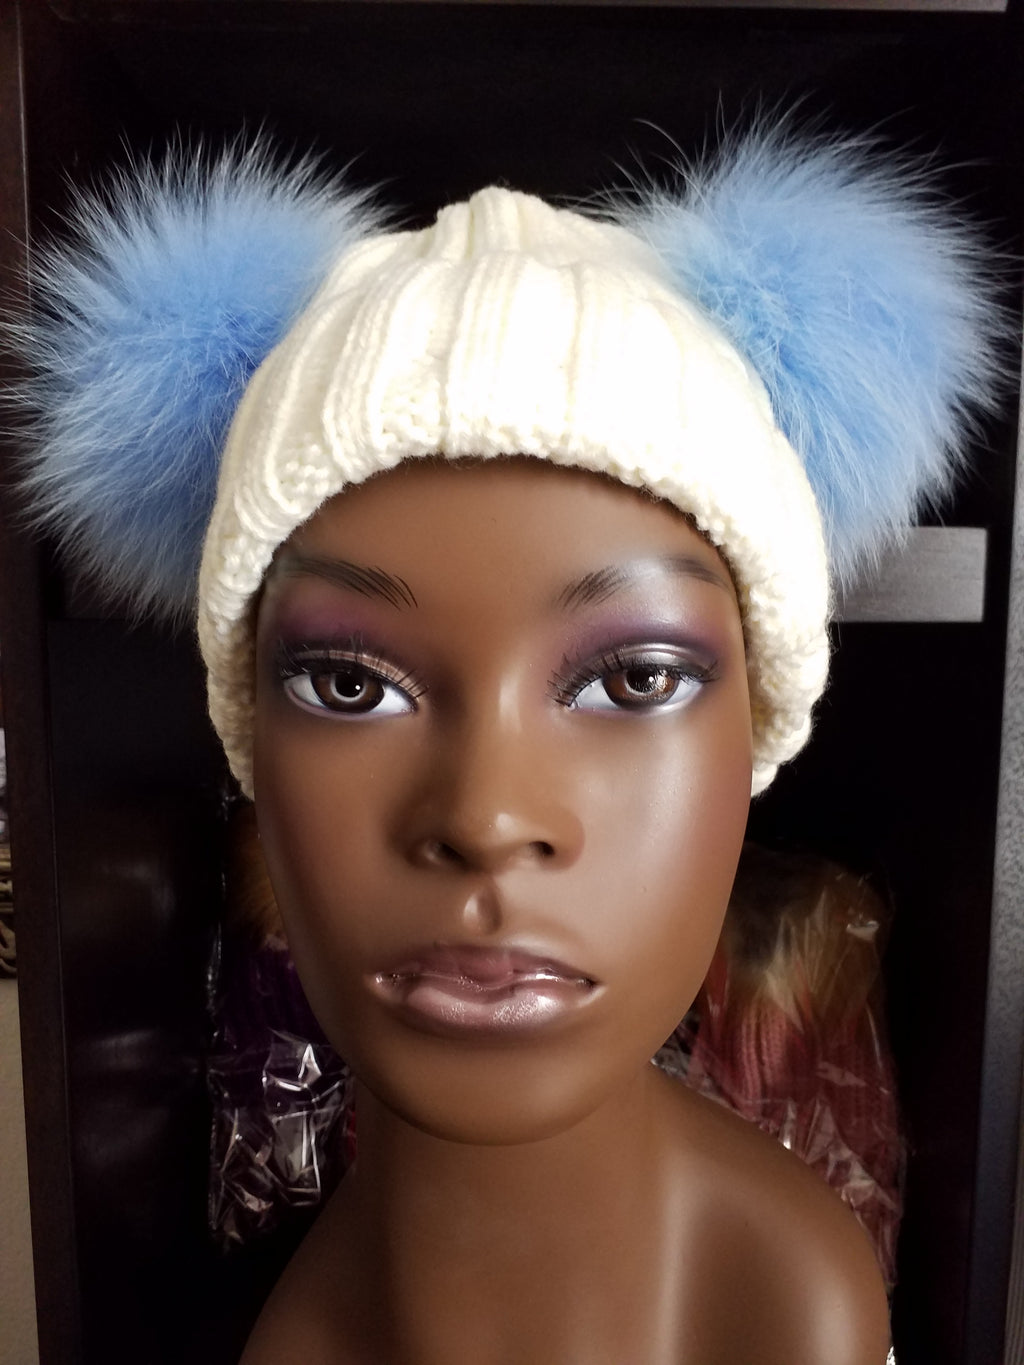 Women's Bunny Ears (Pom Pom) knit hats (caps) with 100% Fox fur - ENUBEE